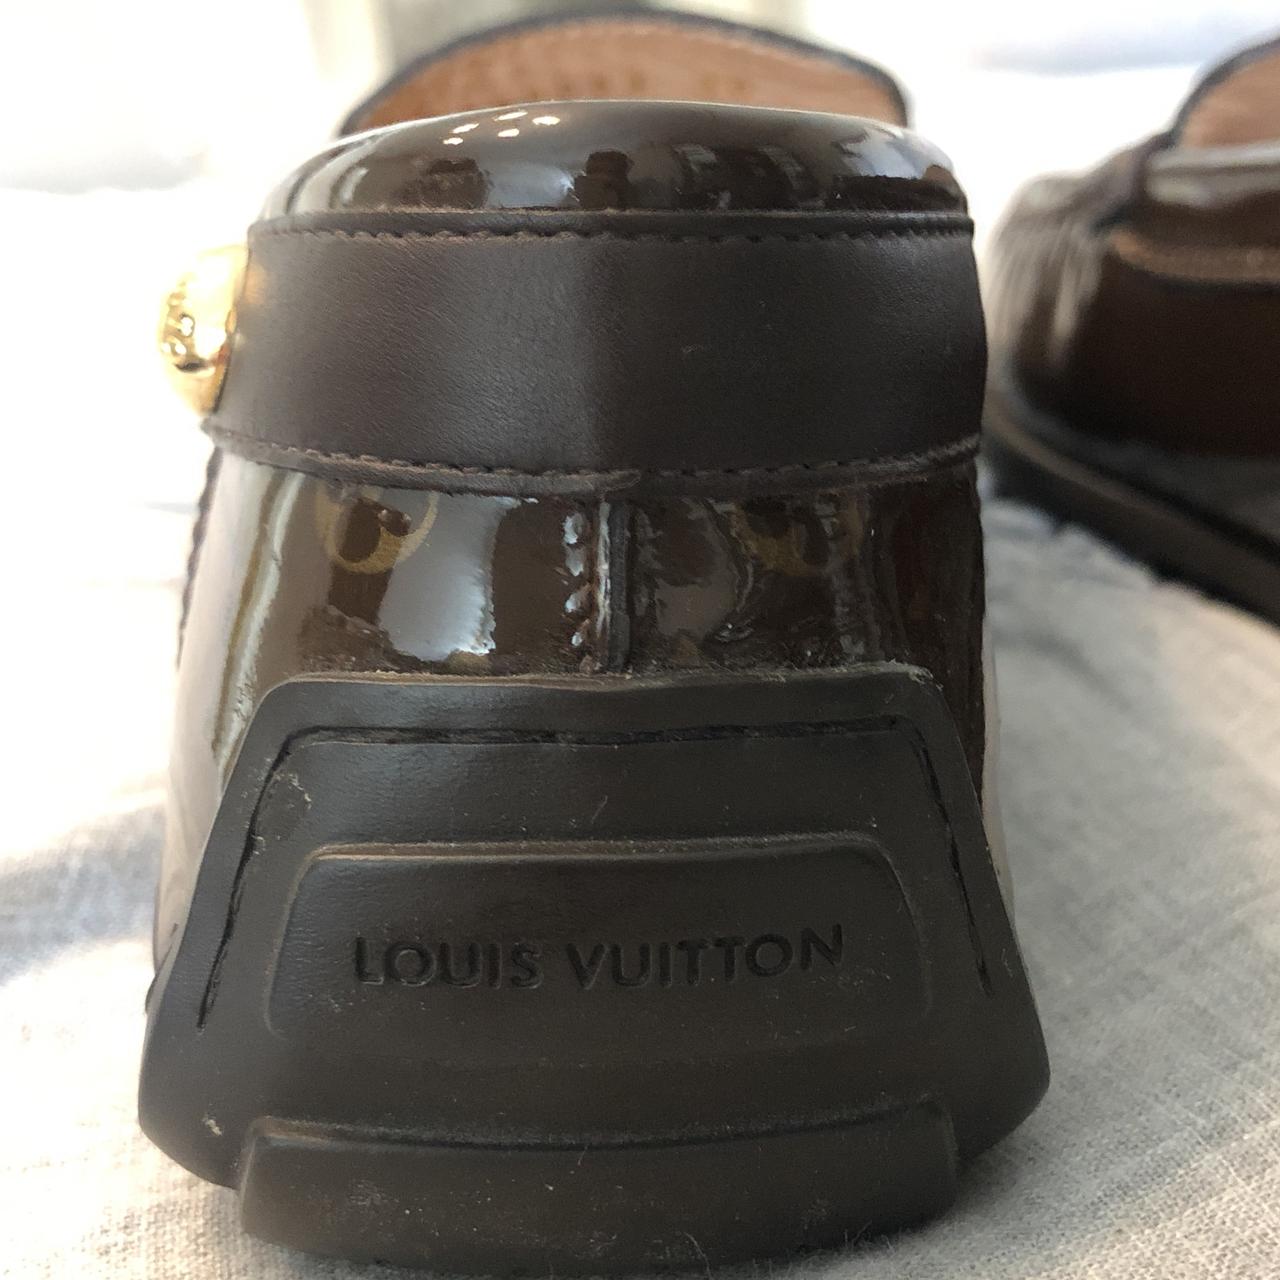 CLIPPER S, Louis's Vuitton vintage lifestyle shoe. - Depop